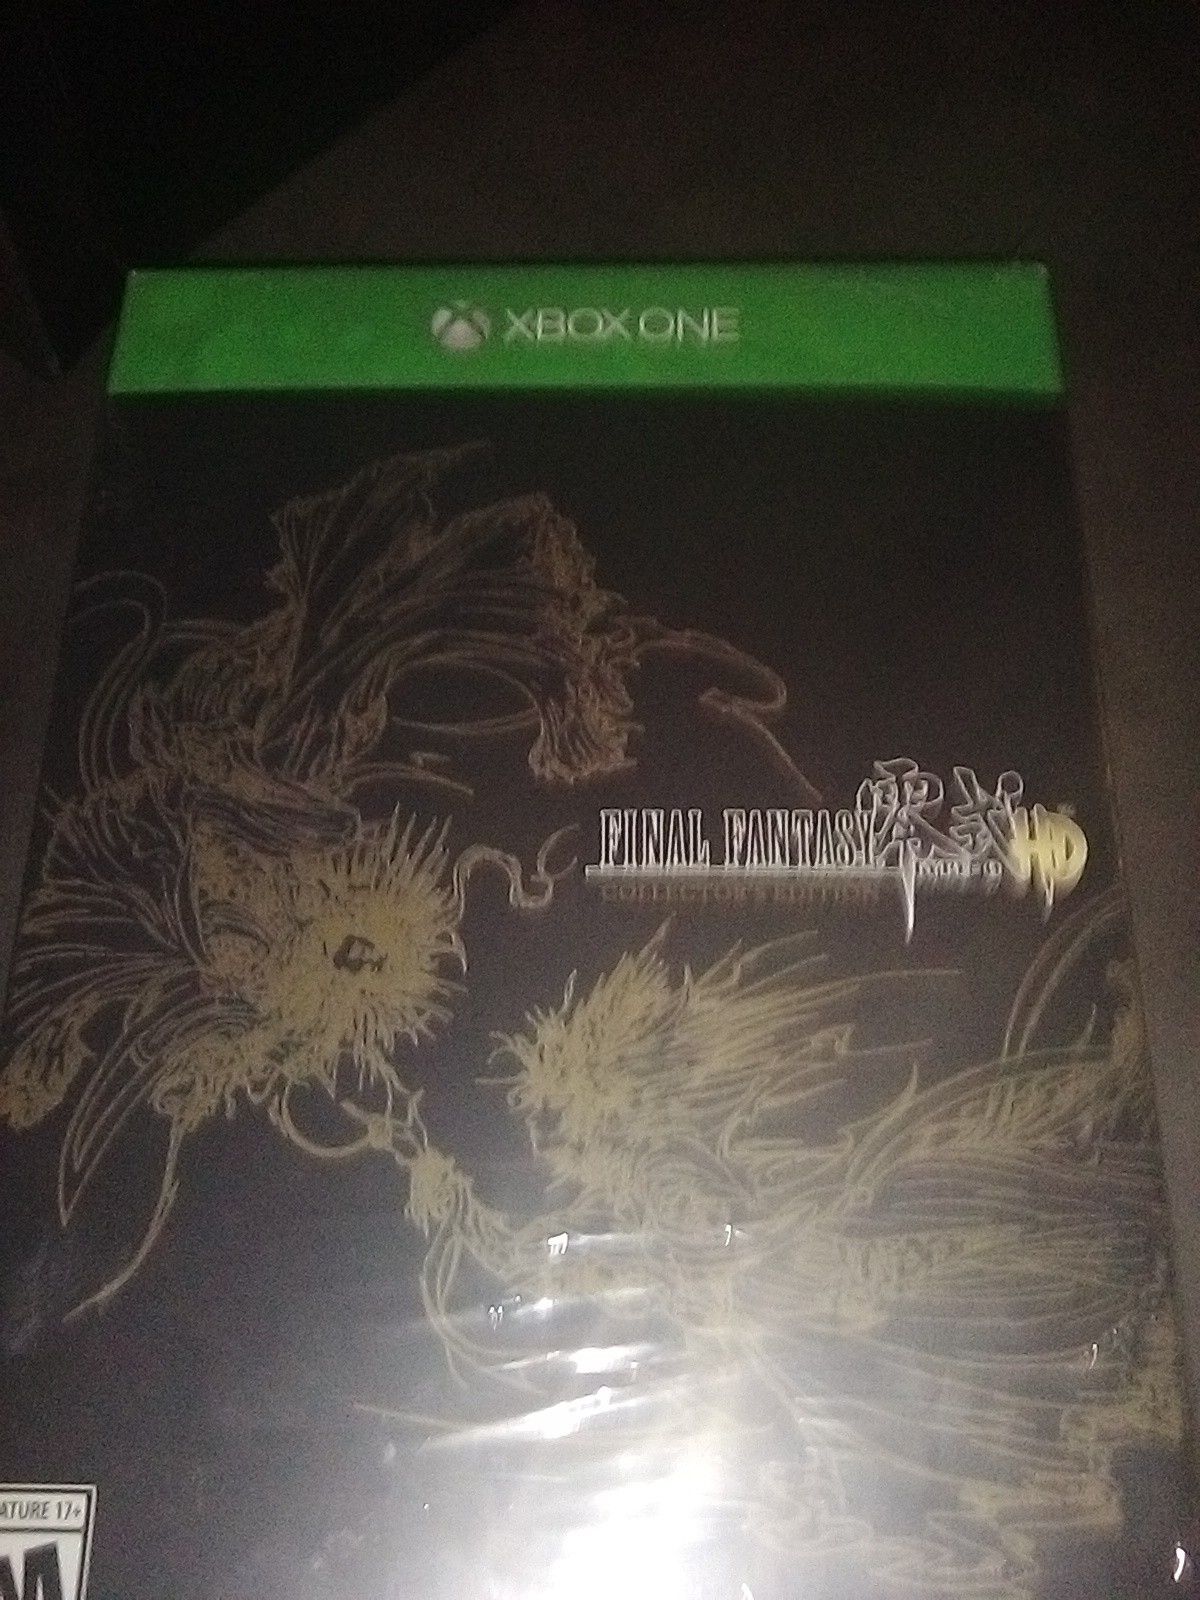 Final fantasy Xbox collection edition